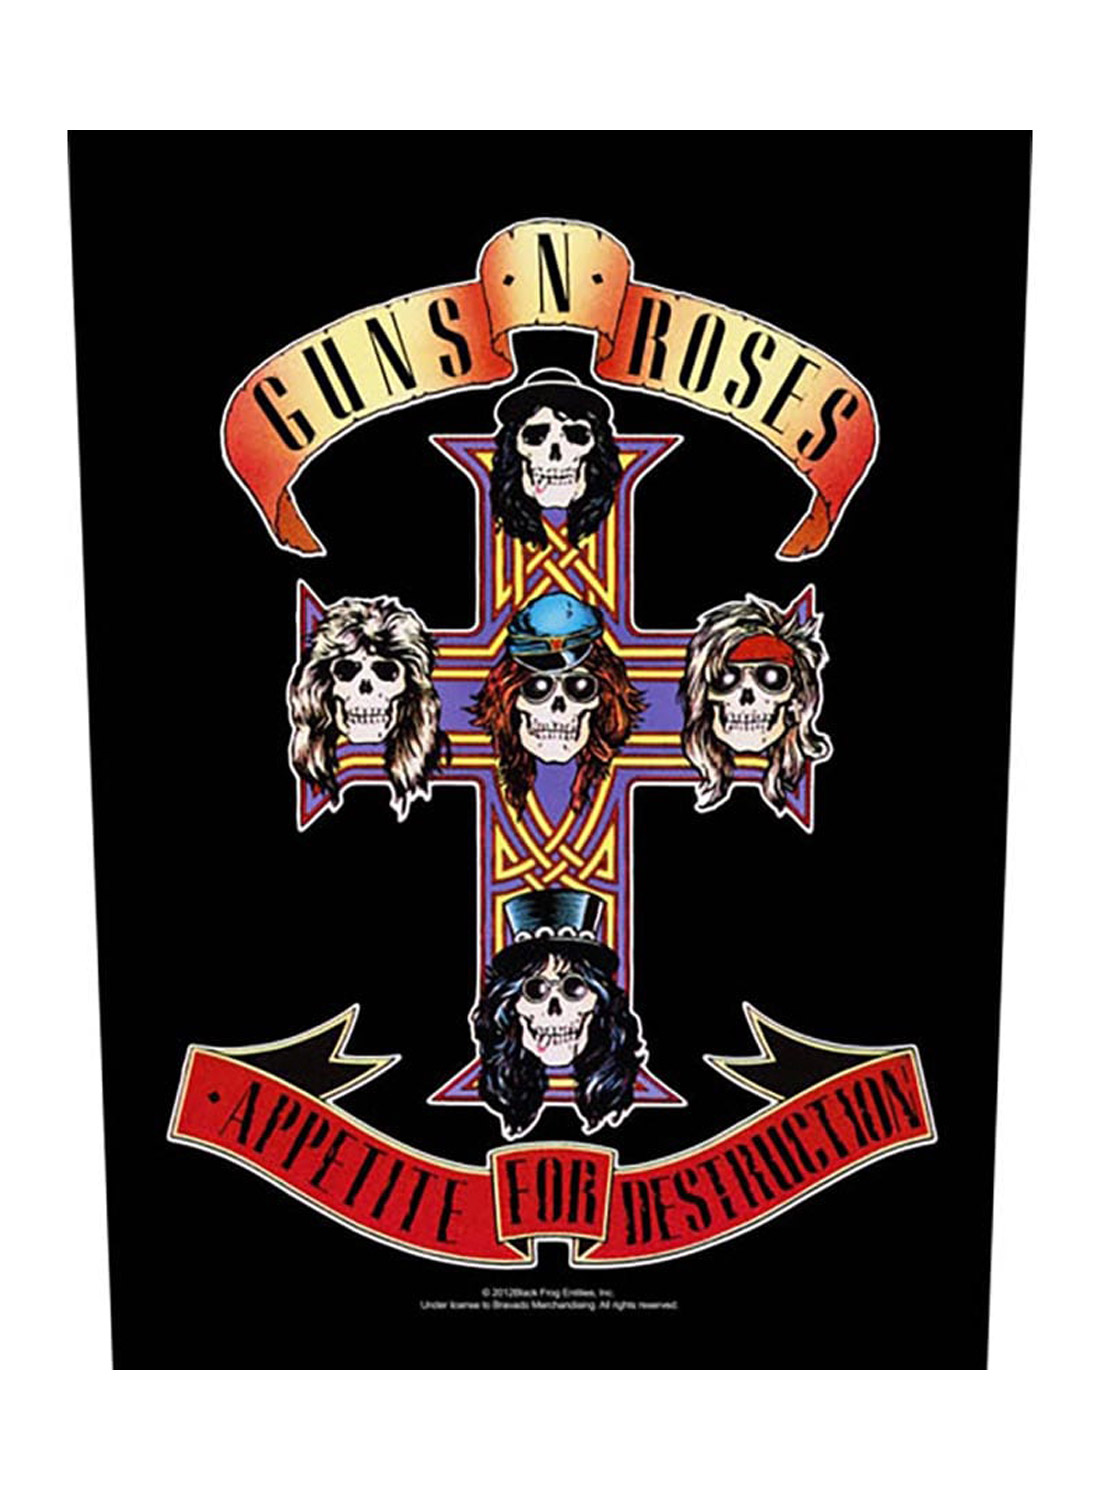 Guns N' Roses Appetite for Destruction Back Patch